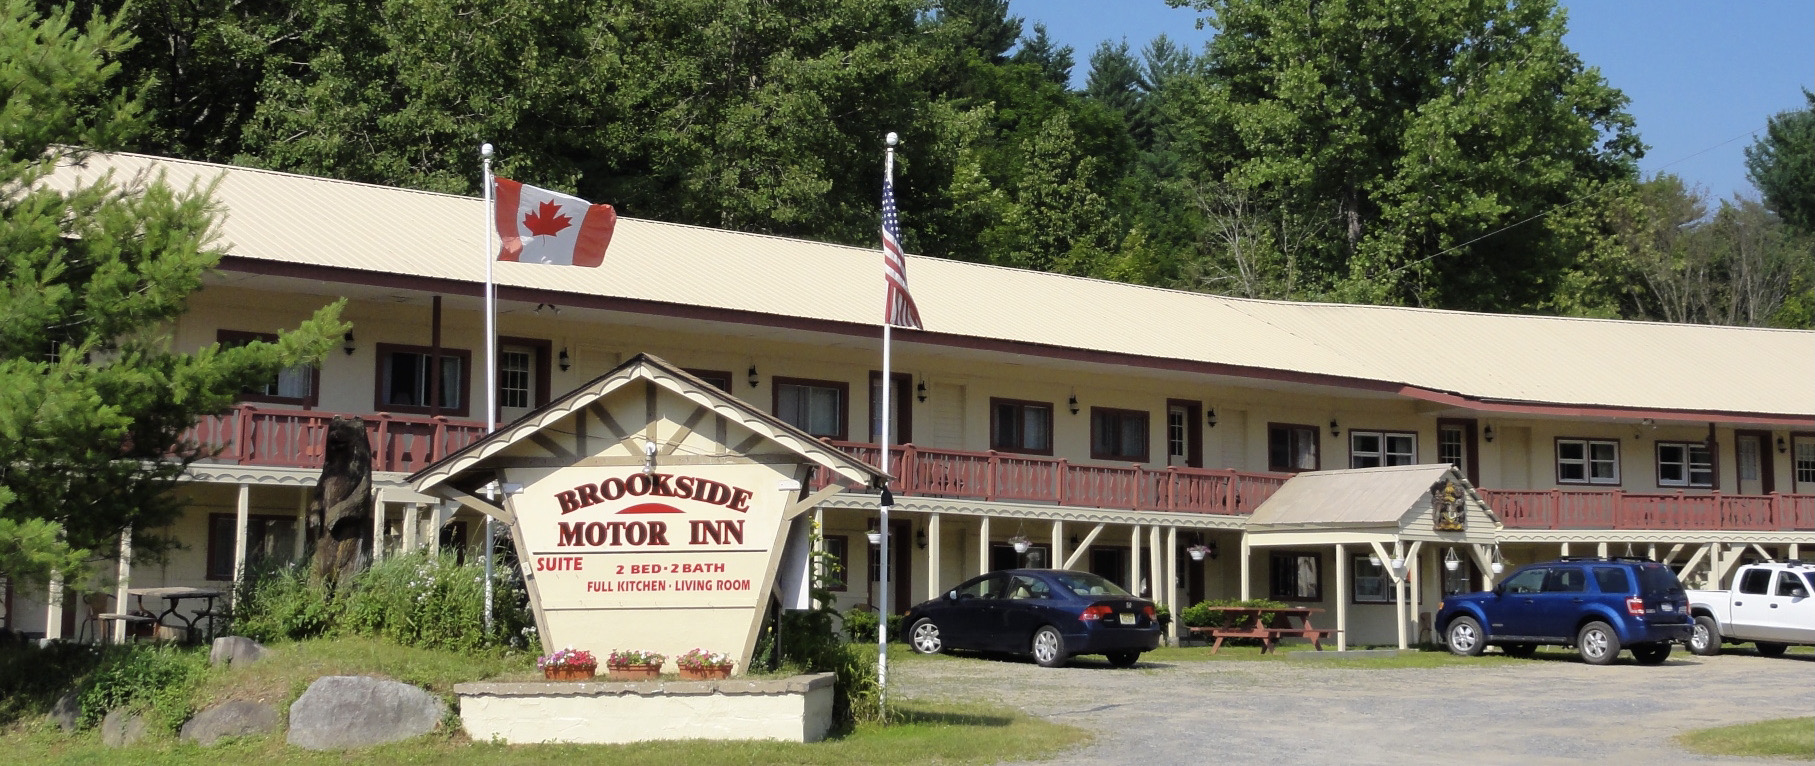 Image of Brookside Motor Inn